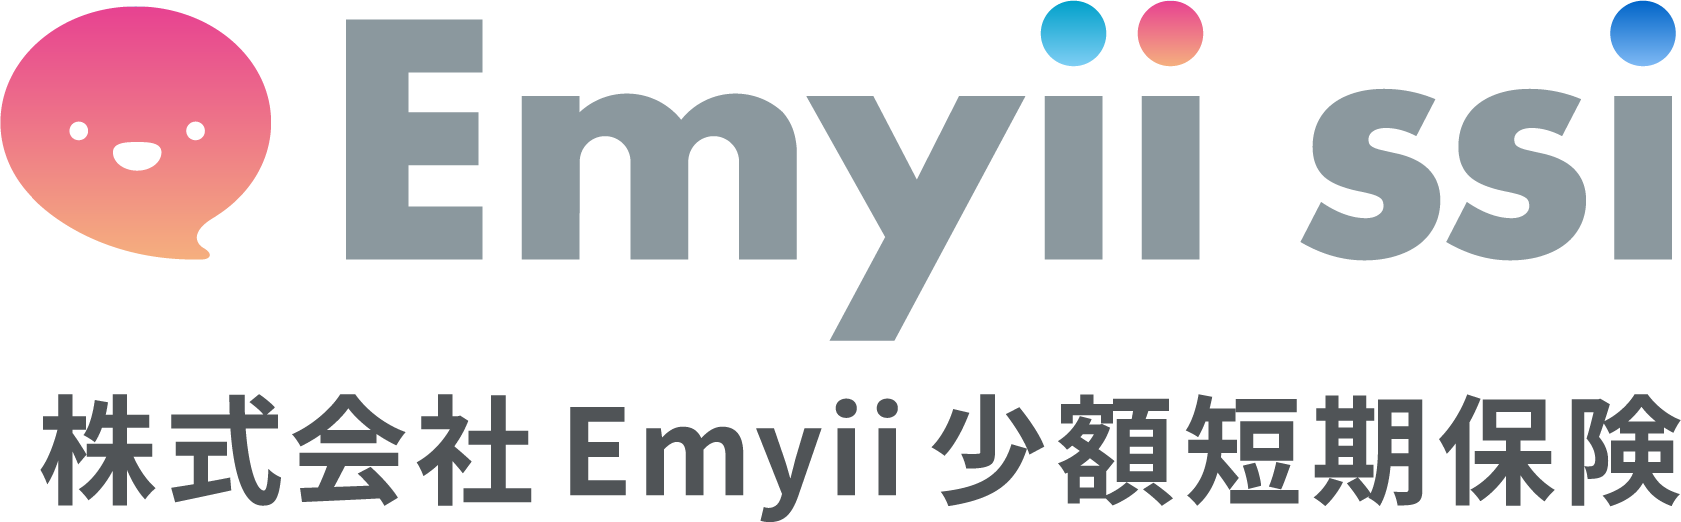 Emyii